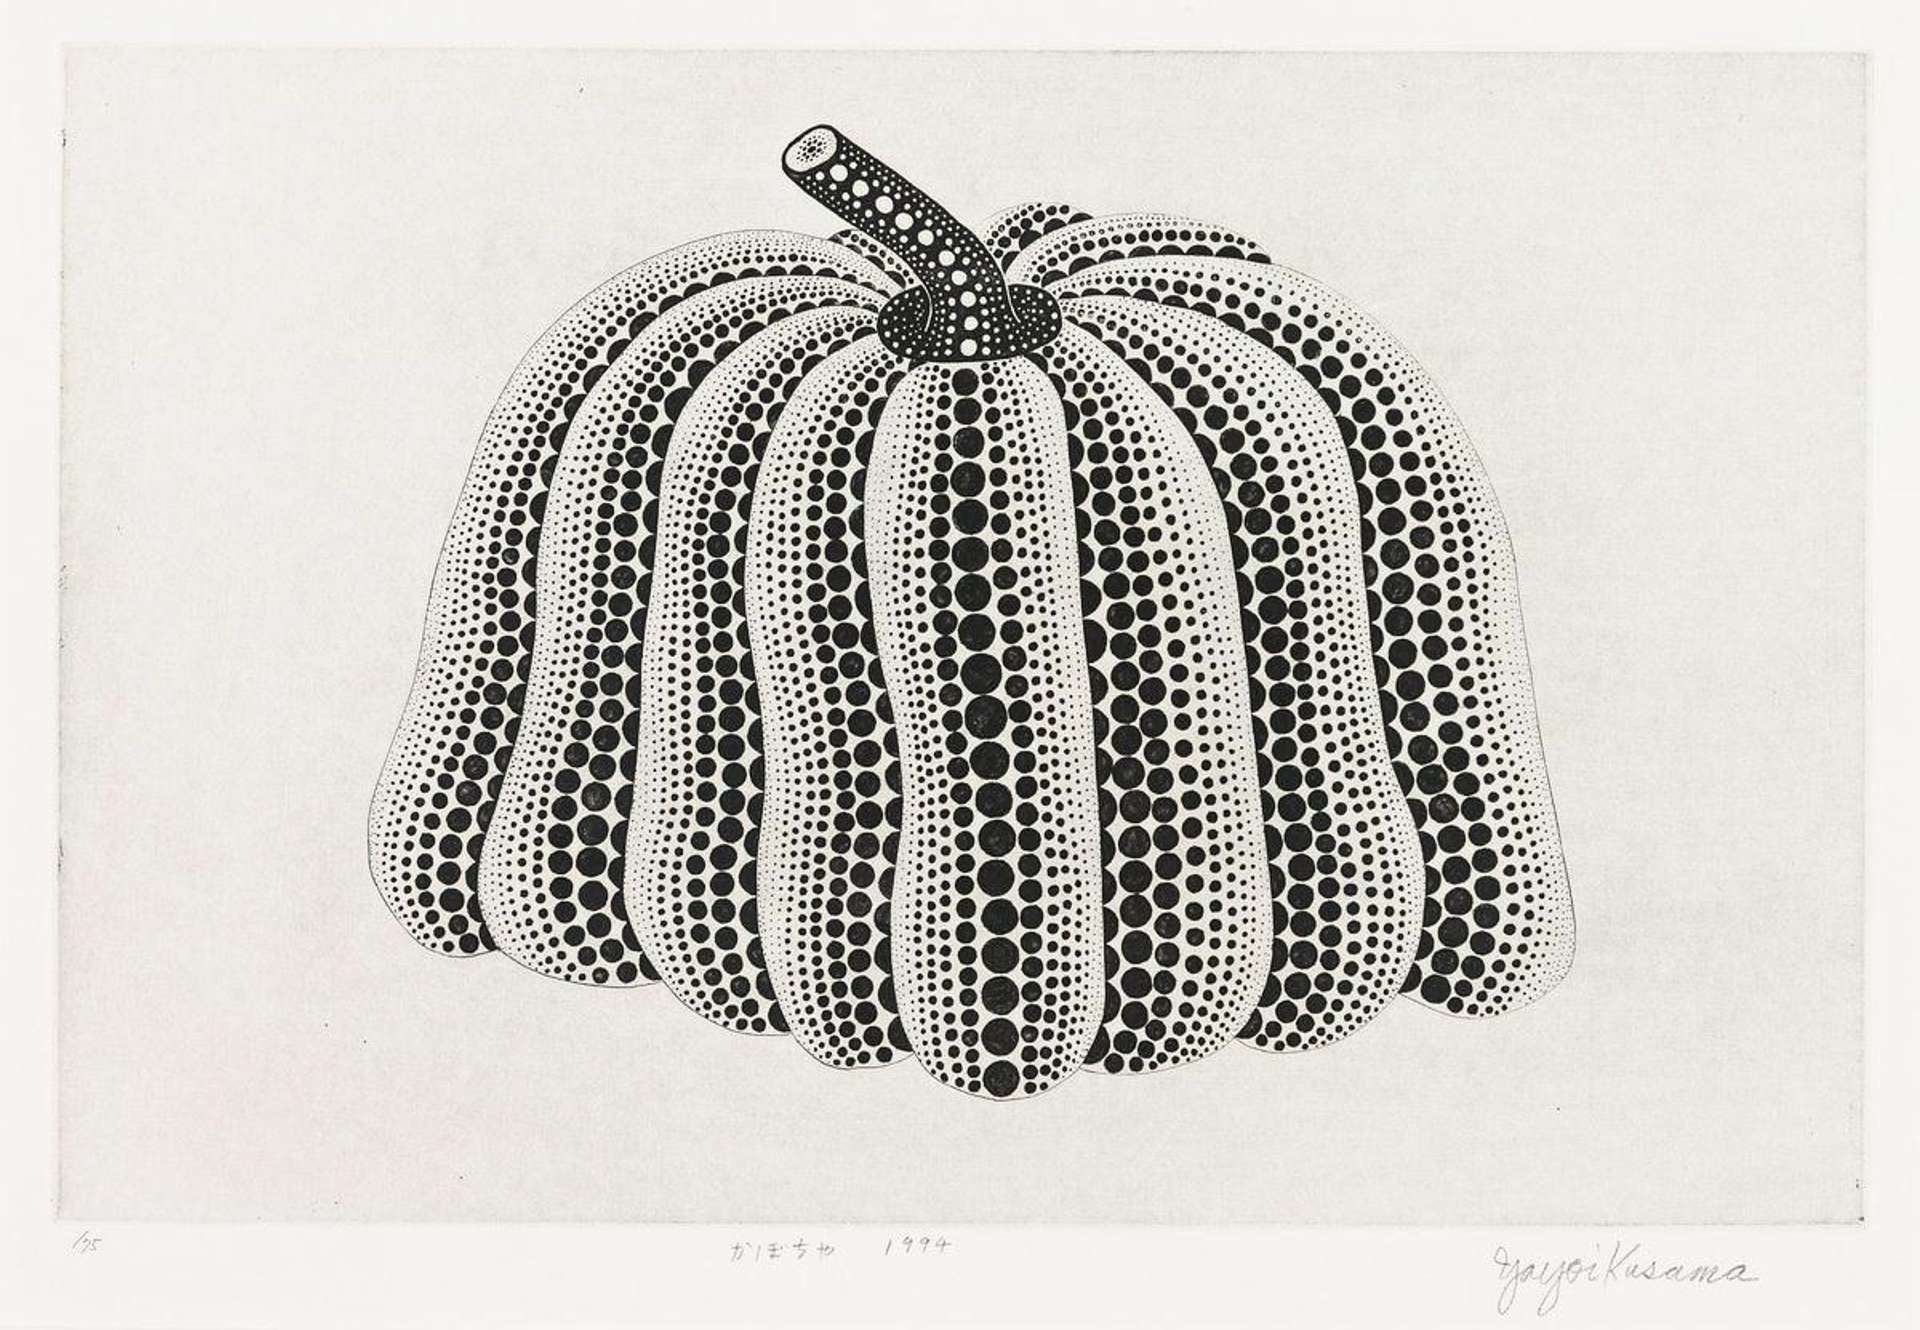 Yayoi Kusama: Pumpkin (black and white) - Signed Print